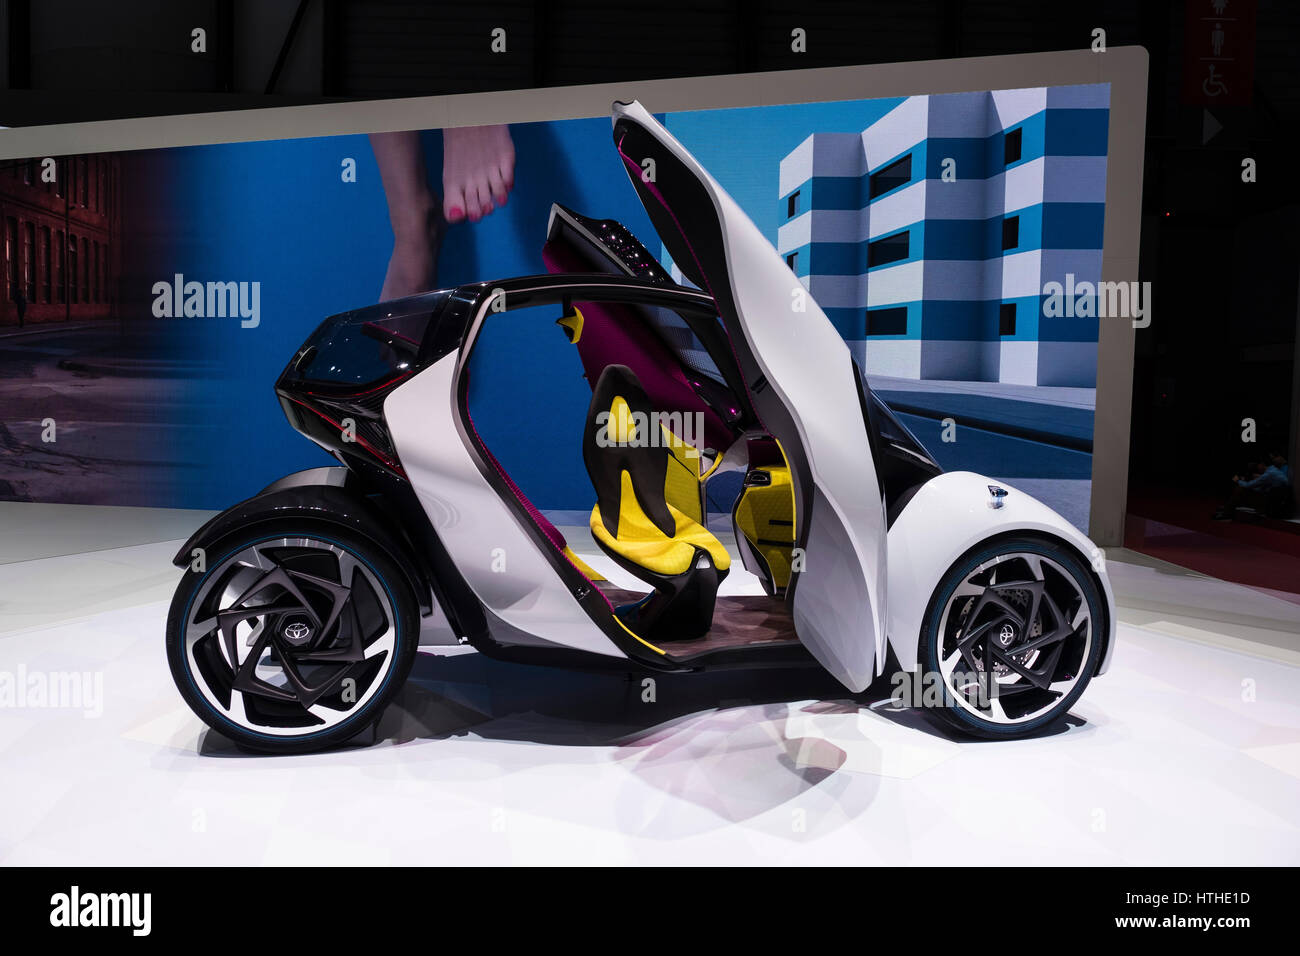 I-Toyota city car électrique Tril concept au 87e Salon International de l'Automobile à Genève Suisse 2017 Banque D'Images